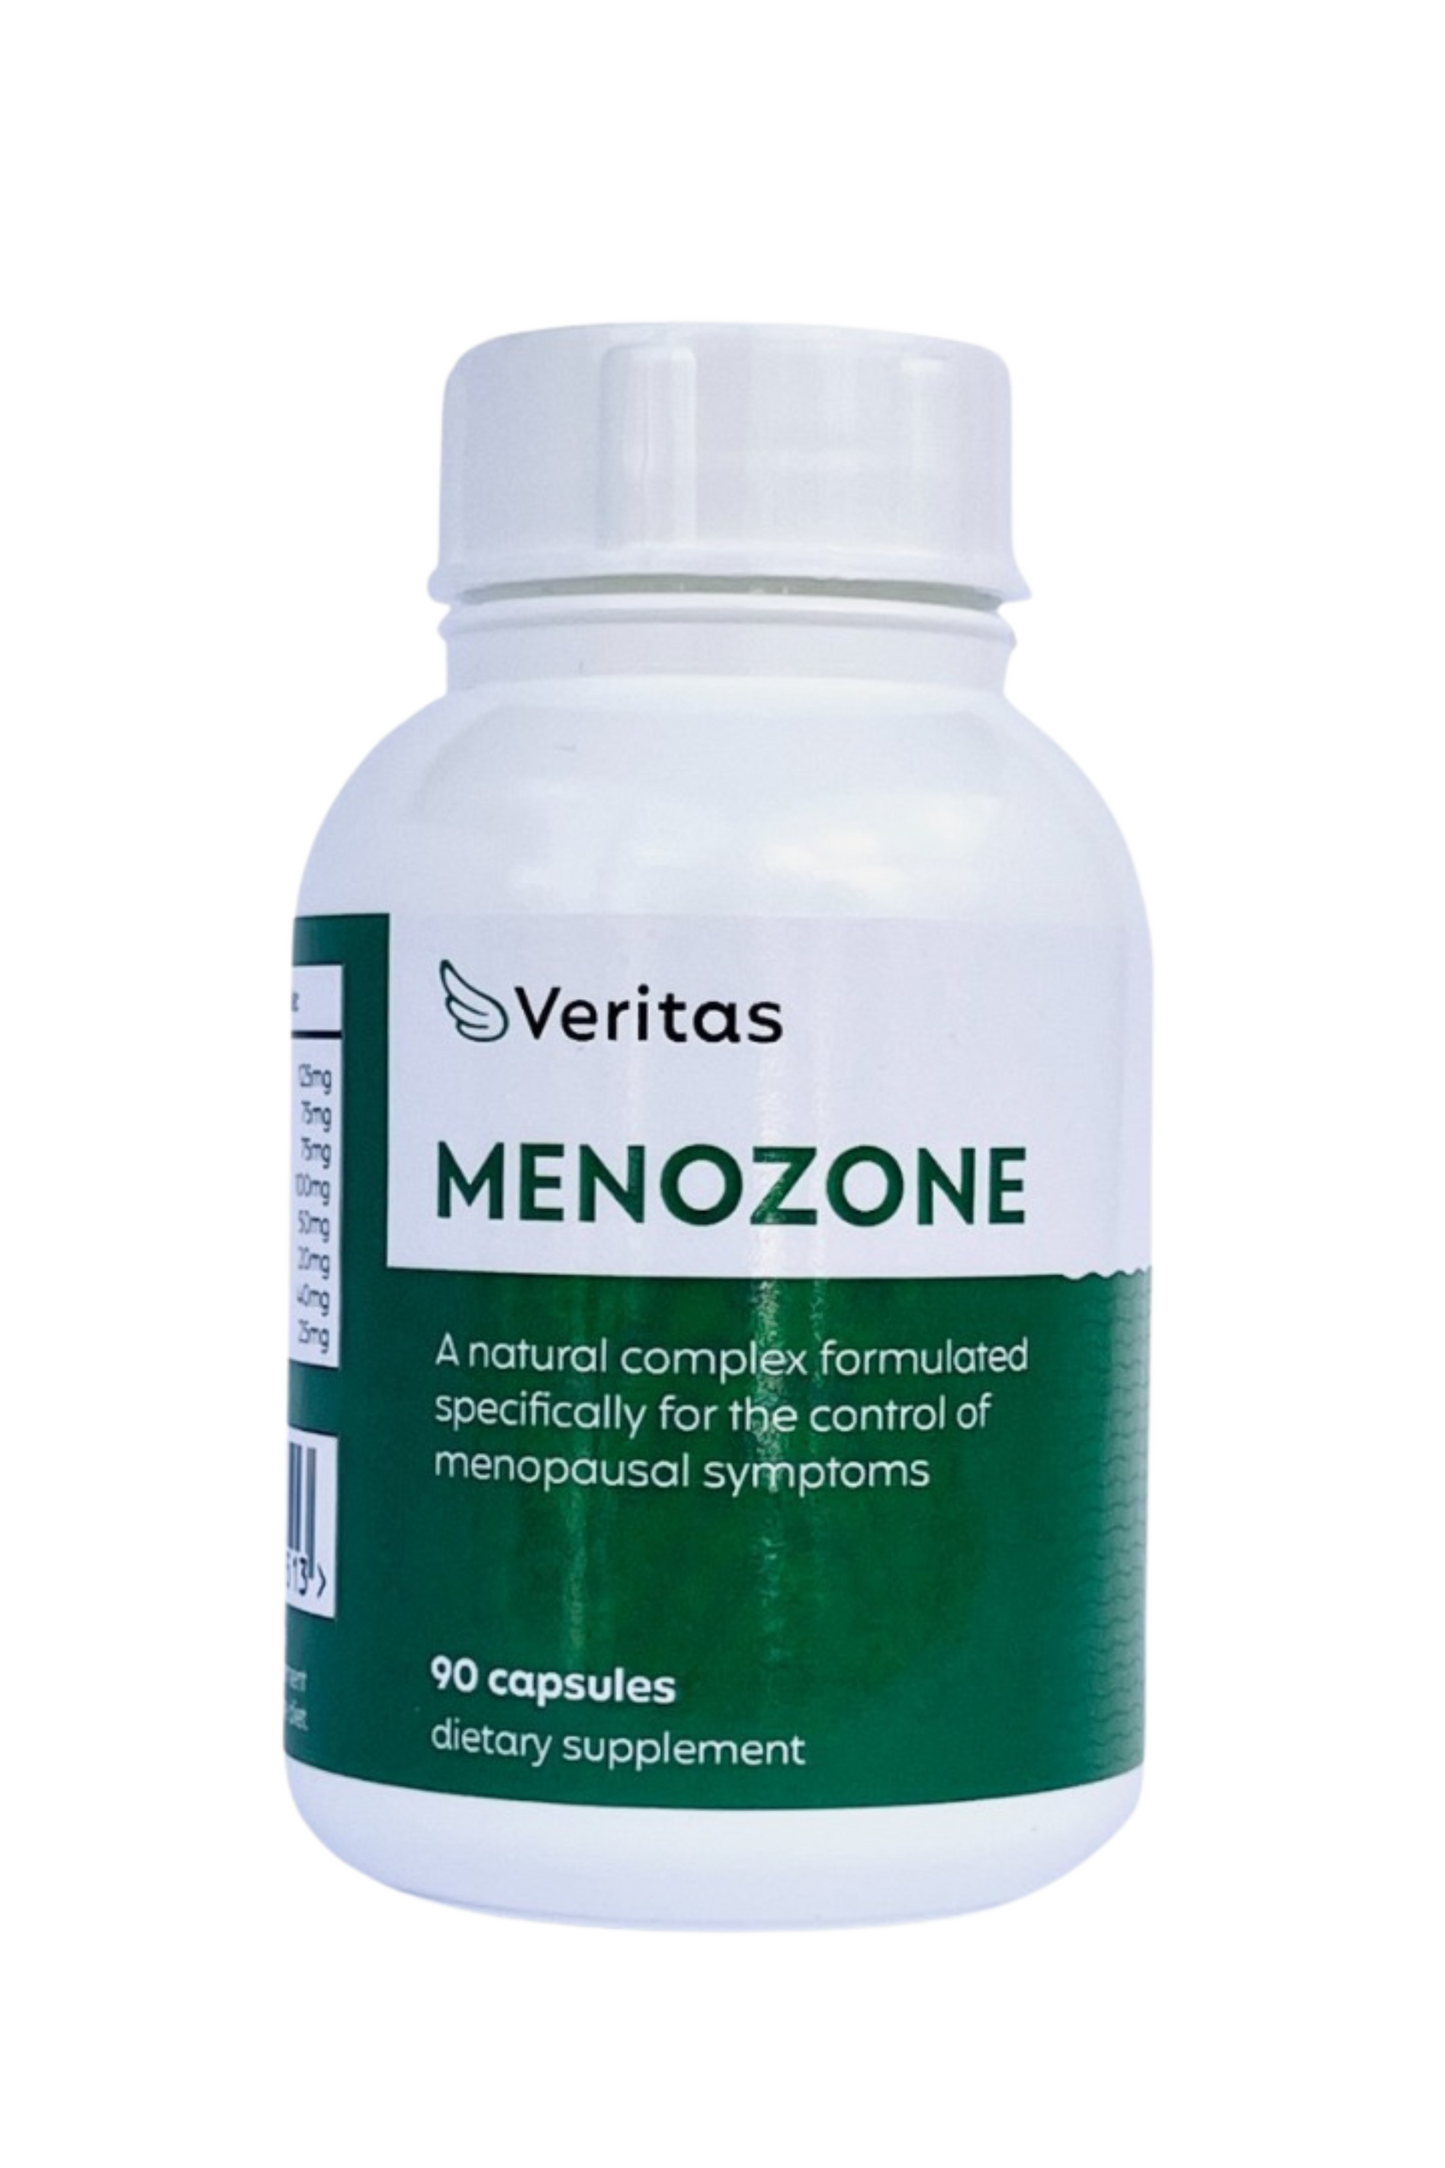 Menozone